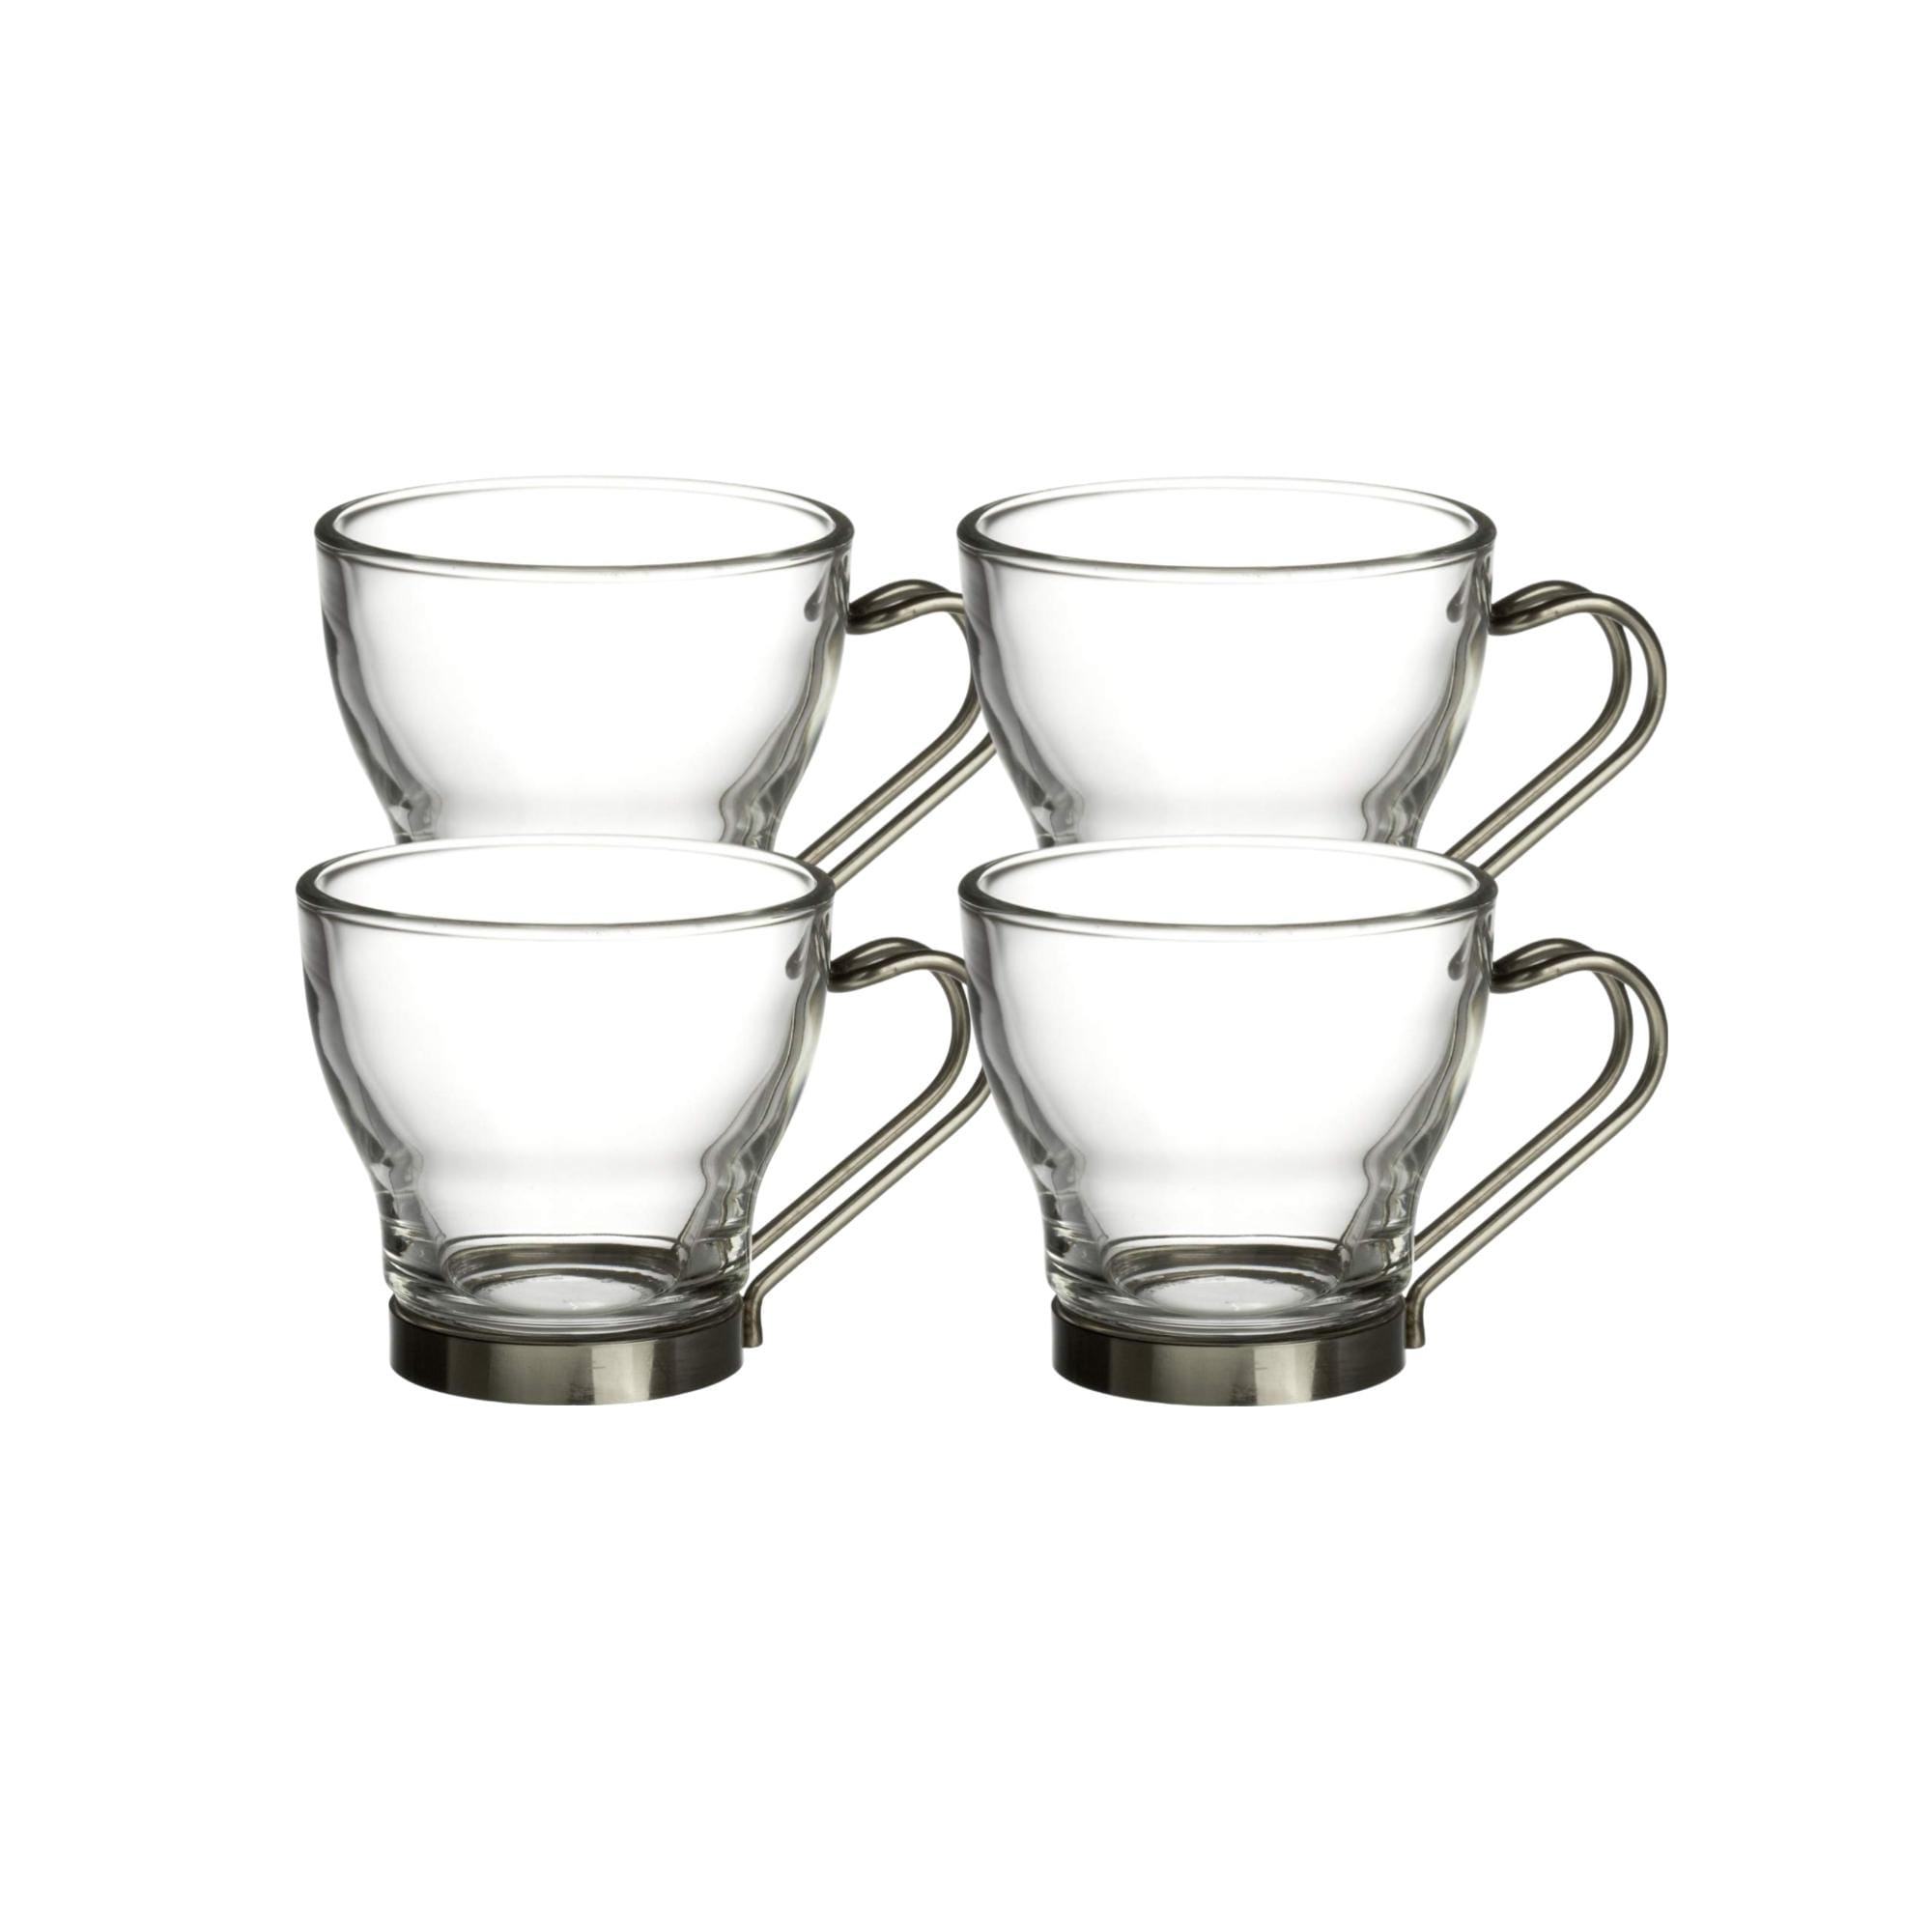 Bormioli Rocco Verdi Set of 4 Espresso Cups With Handle